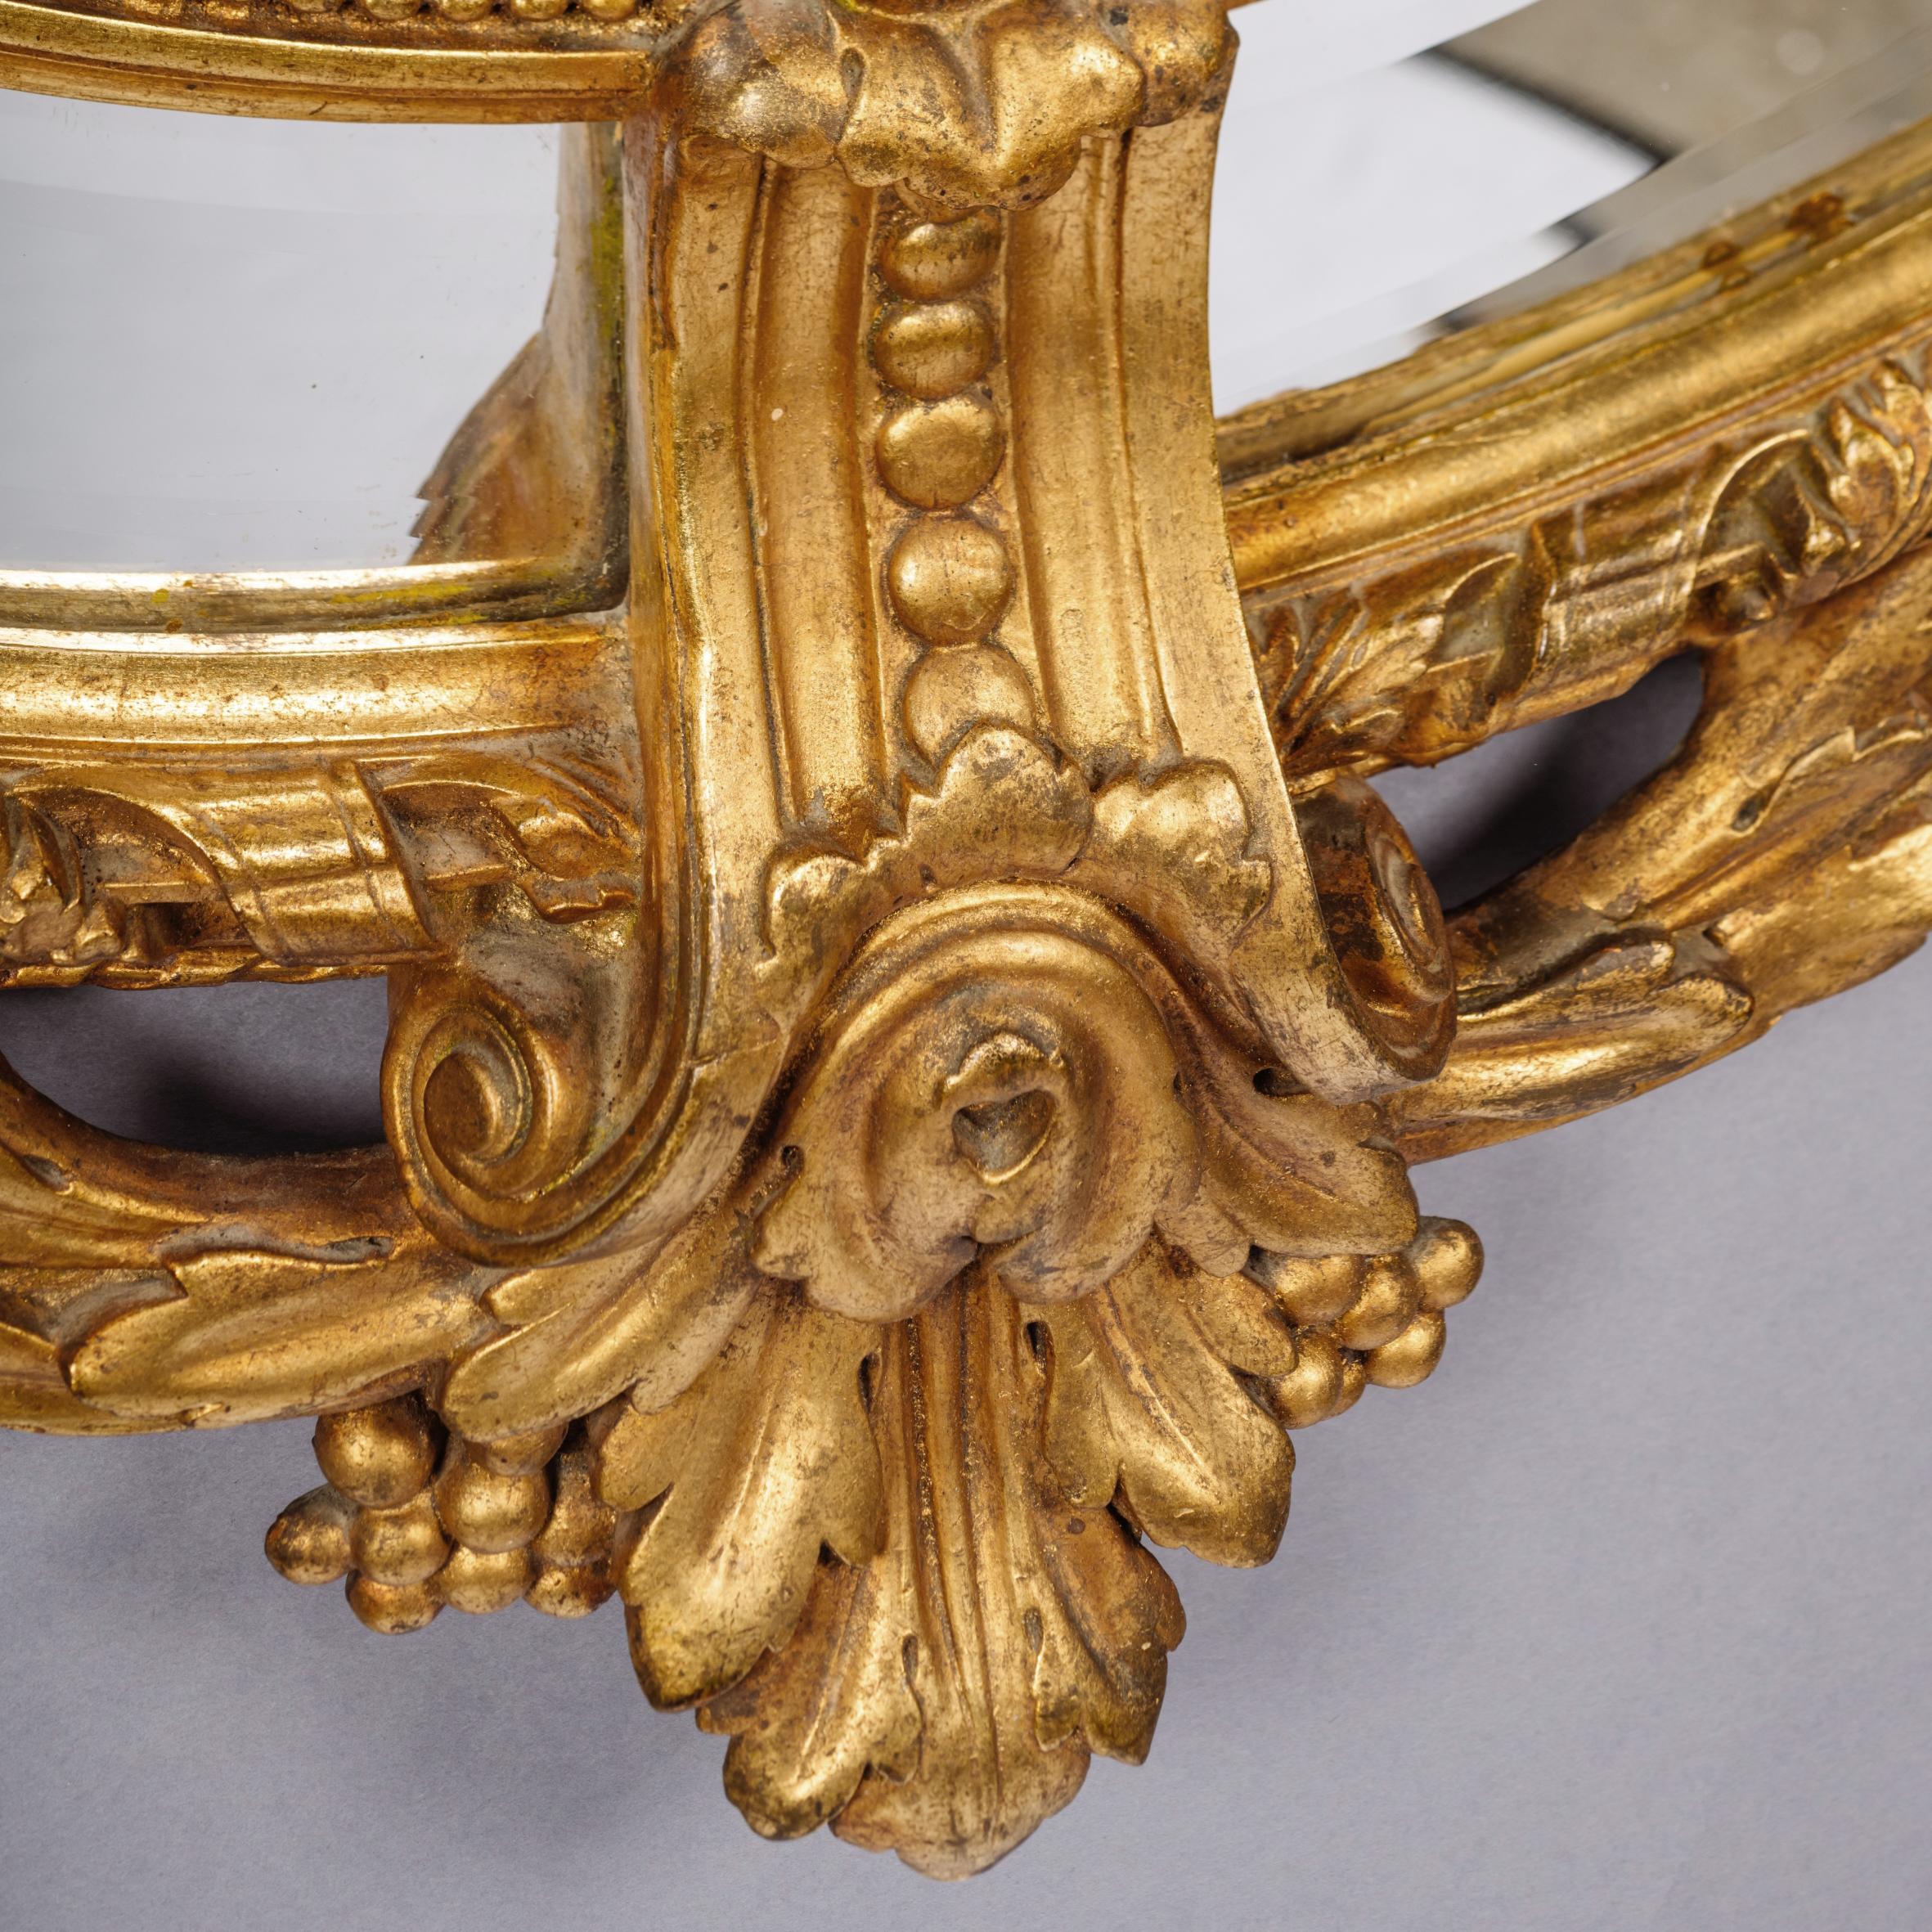 Un beau miroir Napoléon III en bois sculpté et doré, à cadre ovale et marginal.

Ce miroir en bois doré et gesso finement sculpté présente une glace ovale biseautée, des bordures marginales et un exubérant couronnement d'acanthes et de feuillages